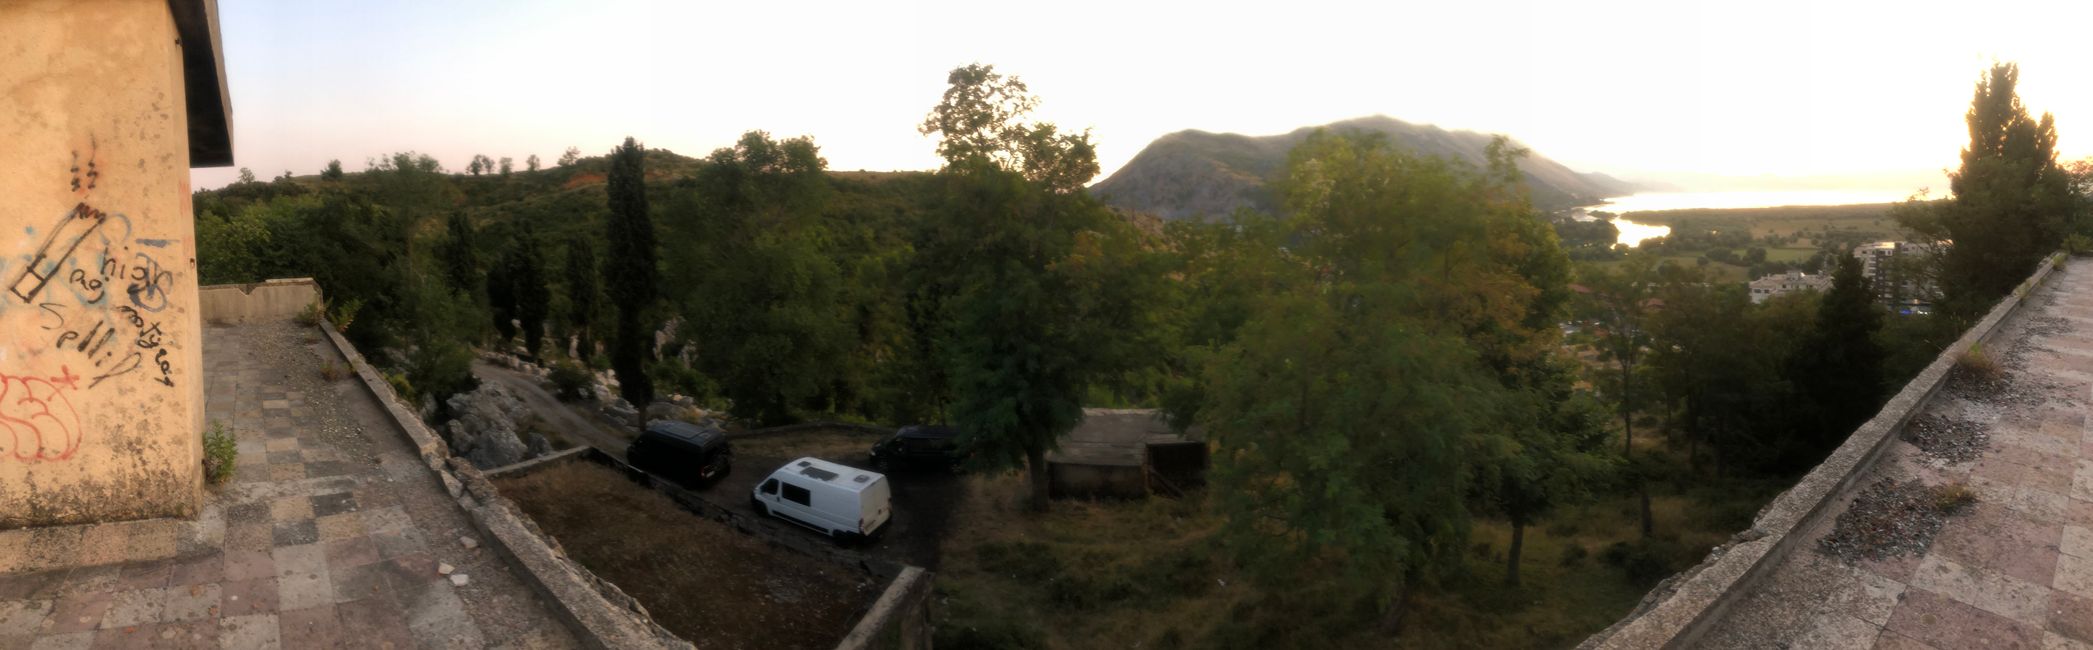 Ein Lost Place und Übernachtungsspot mit einer wunderschönen Aussicht auf Shkodër - Albanien